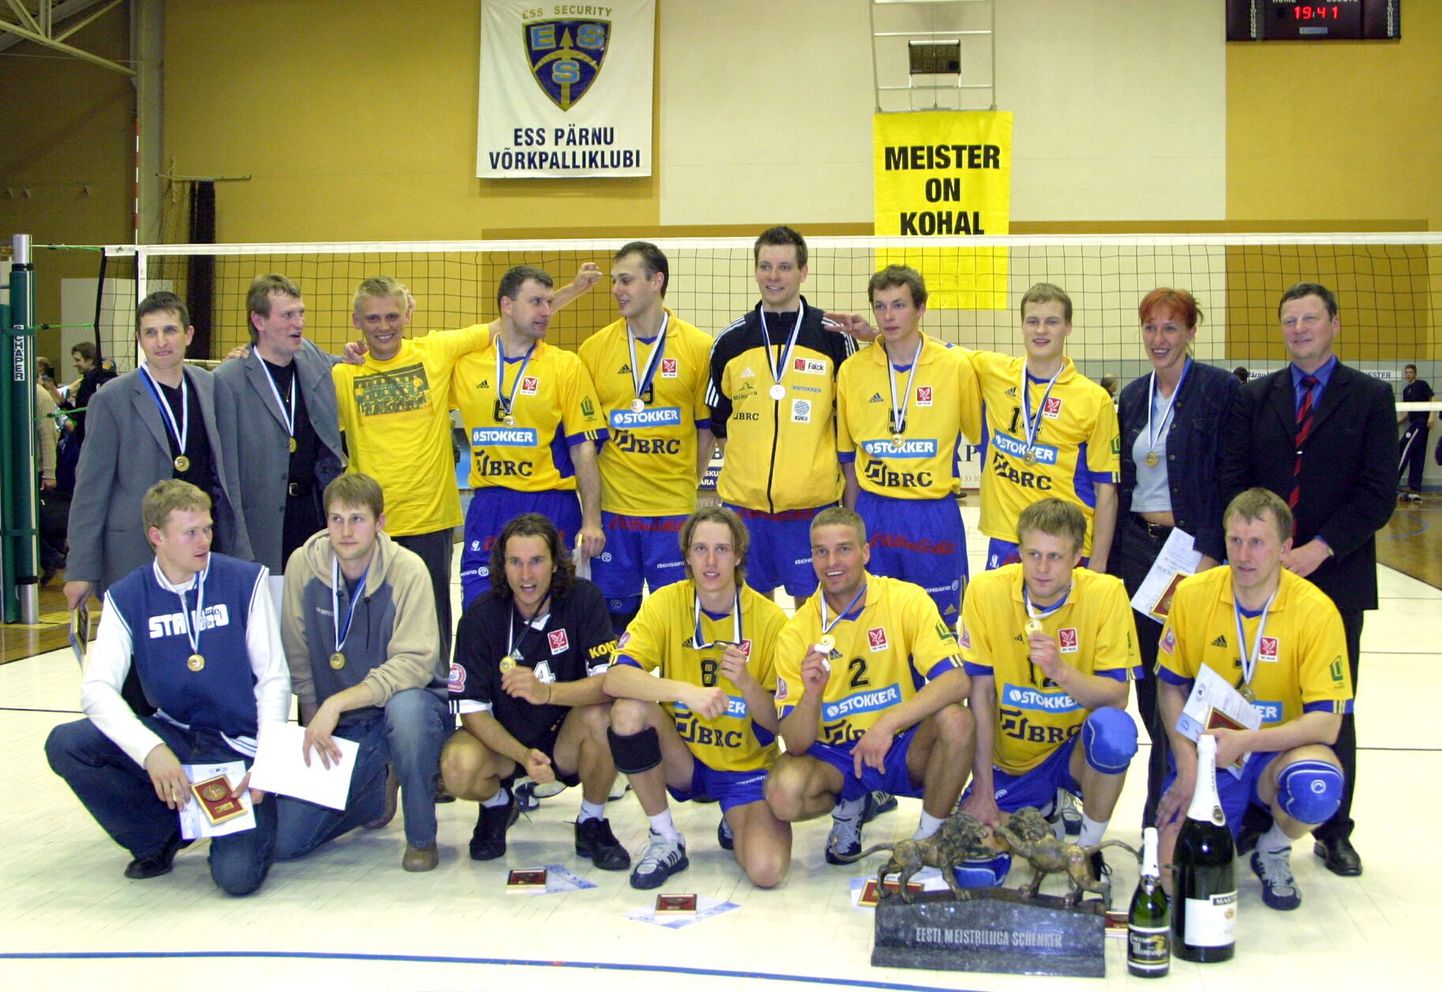 ESS Pärnu võrkpalliklubi 2004. aastal